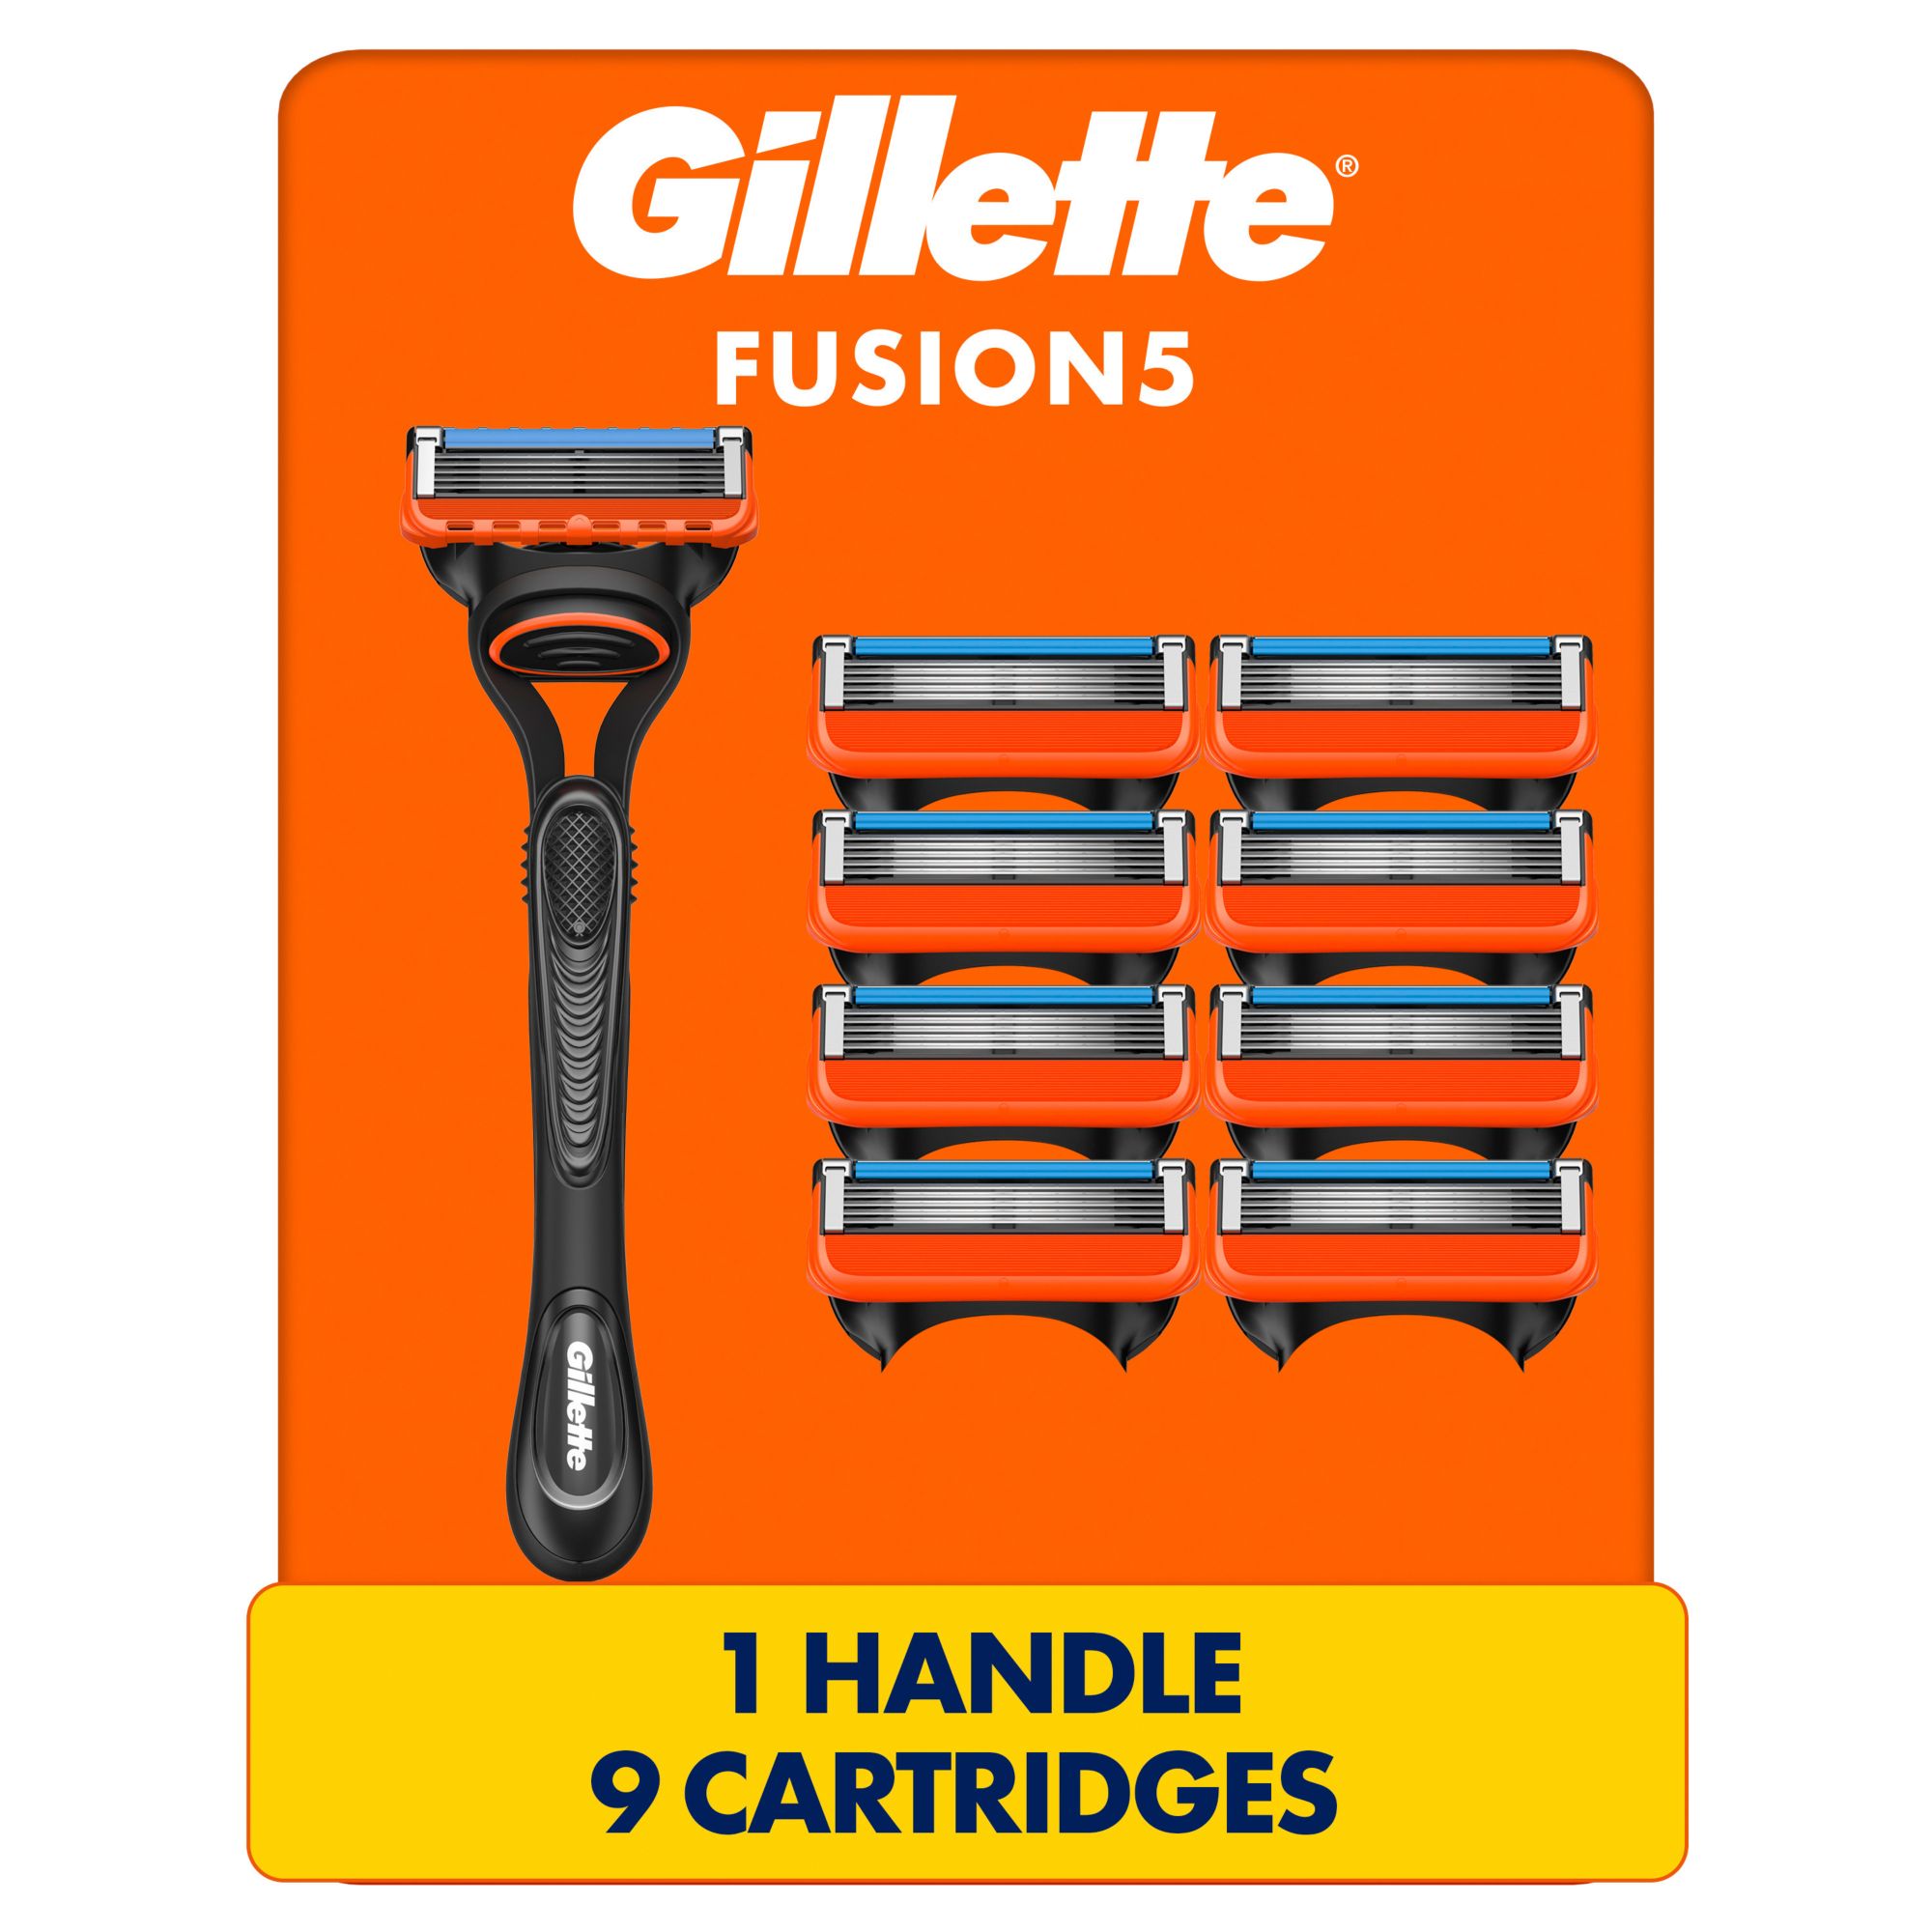 Gillette Fusion5 Men's Razor with 9 Razor Blade Refills